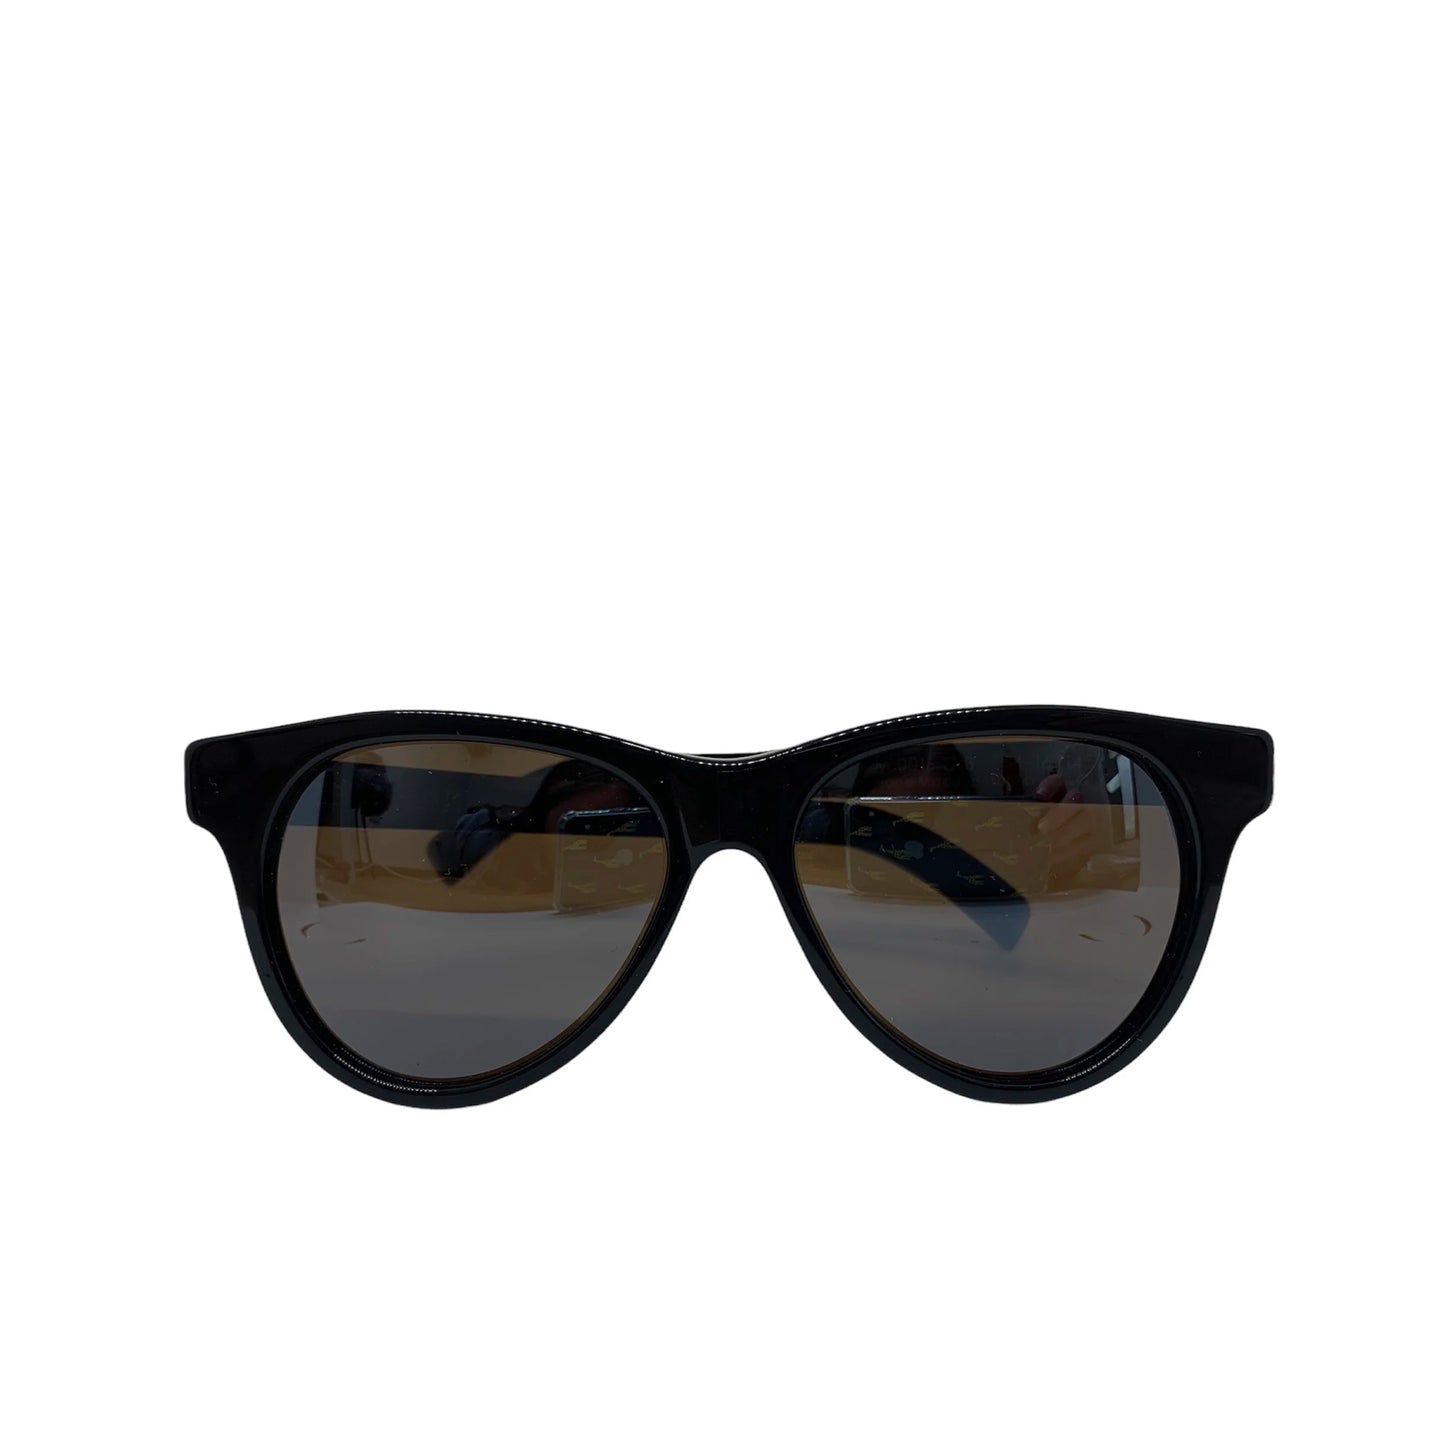 Cutler & Gross Black Sunglasses